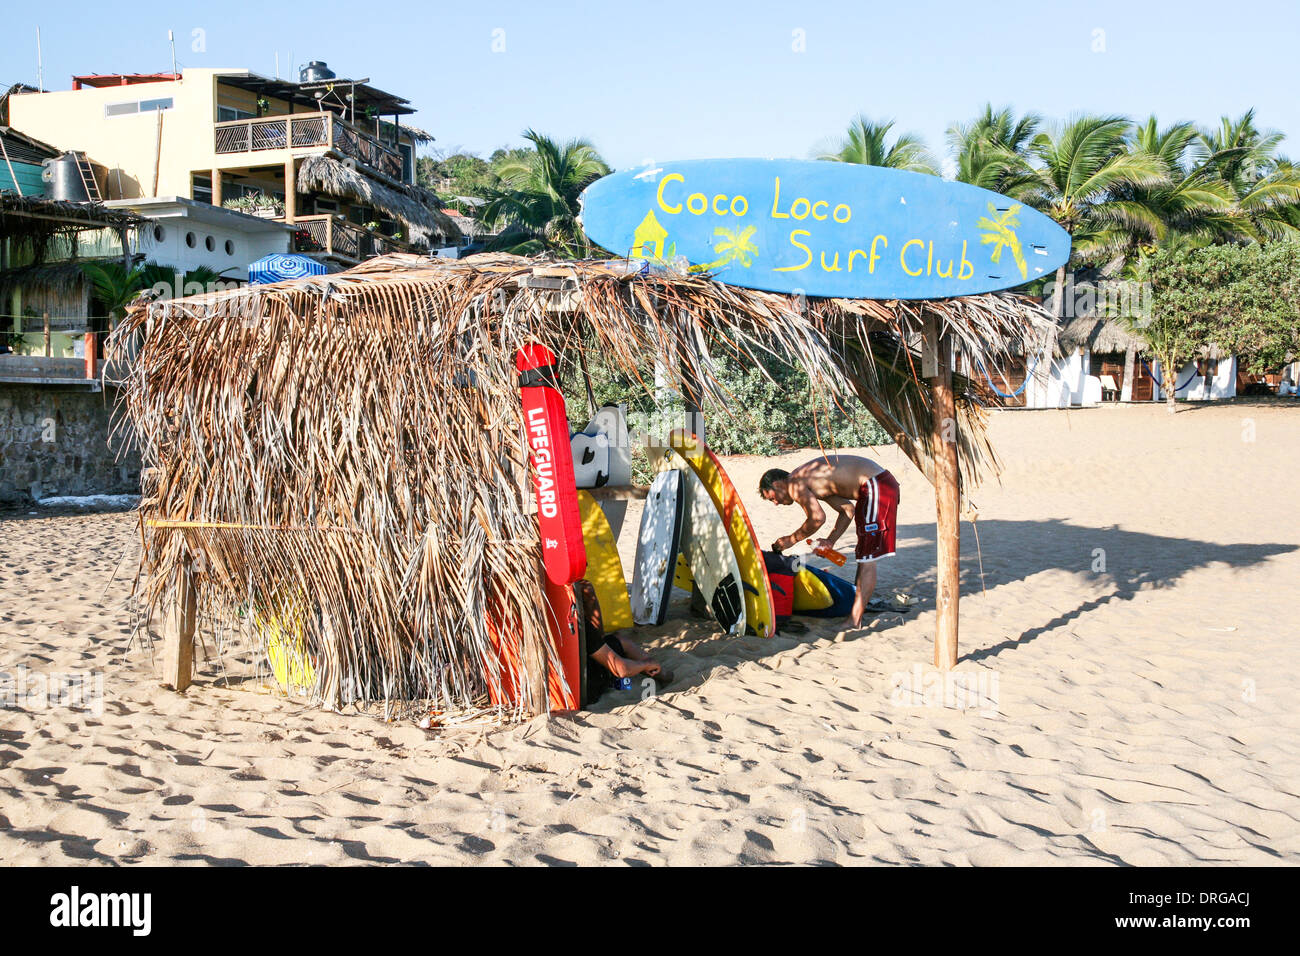 Surf Club beach abri avec toit palapa où les membres peuvent stocker pour pignons et des planches durant la journée quand ils viennent dans le surf Banque D'Images